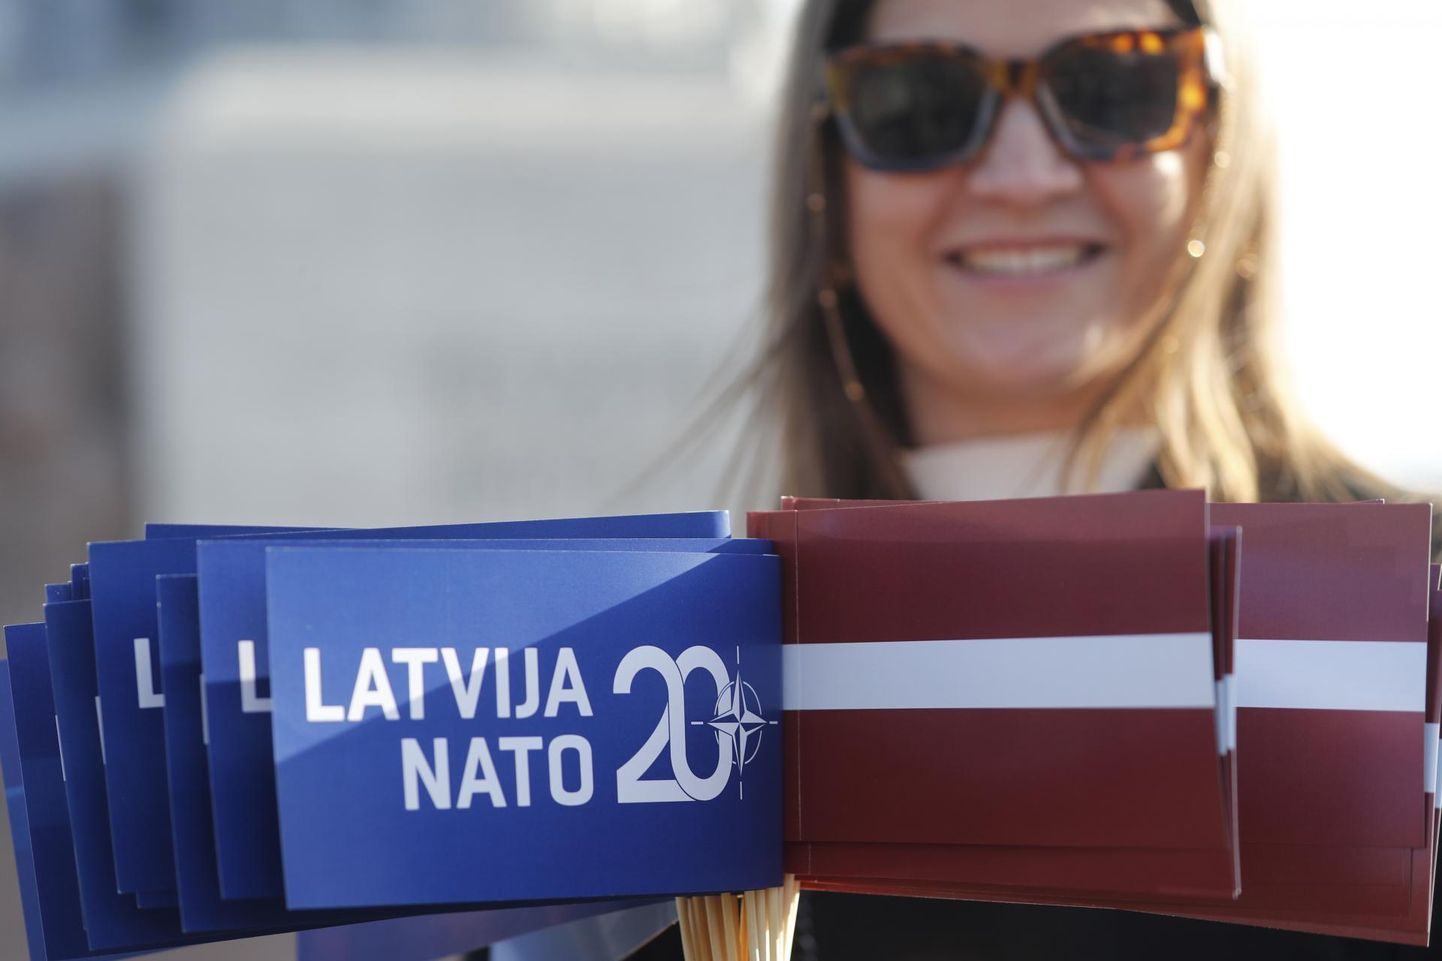 Lätlanna riigi sõjalisse liitu asumise 20. aastat tähistavate Läti ja NATO lipukestega neljapäeval Riias.. 